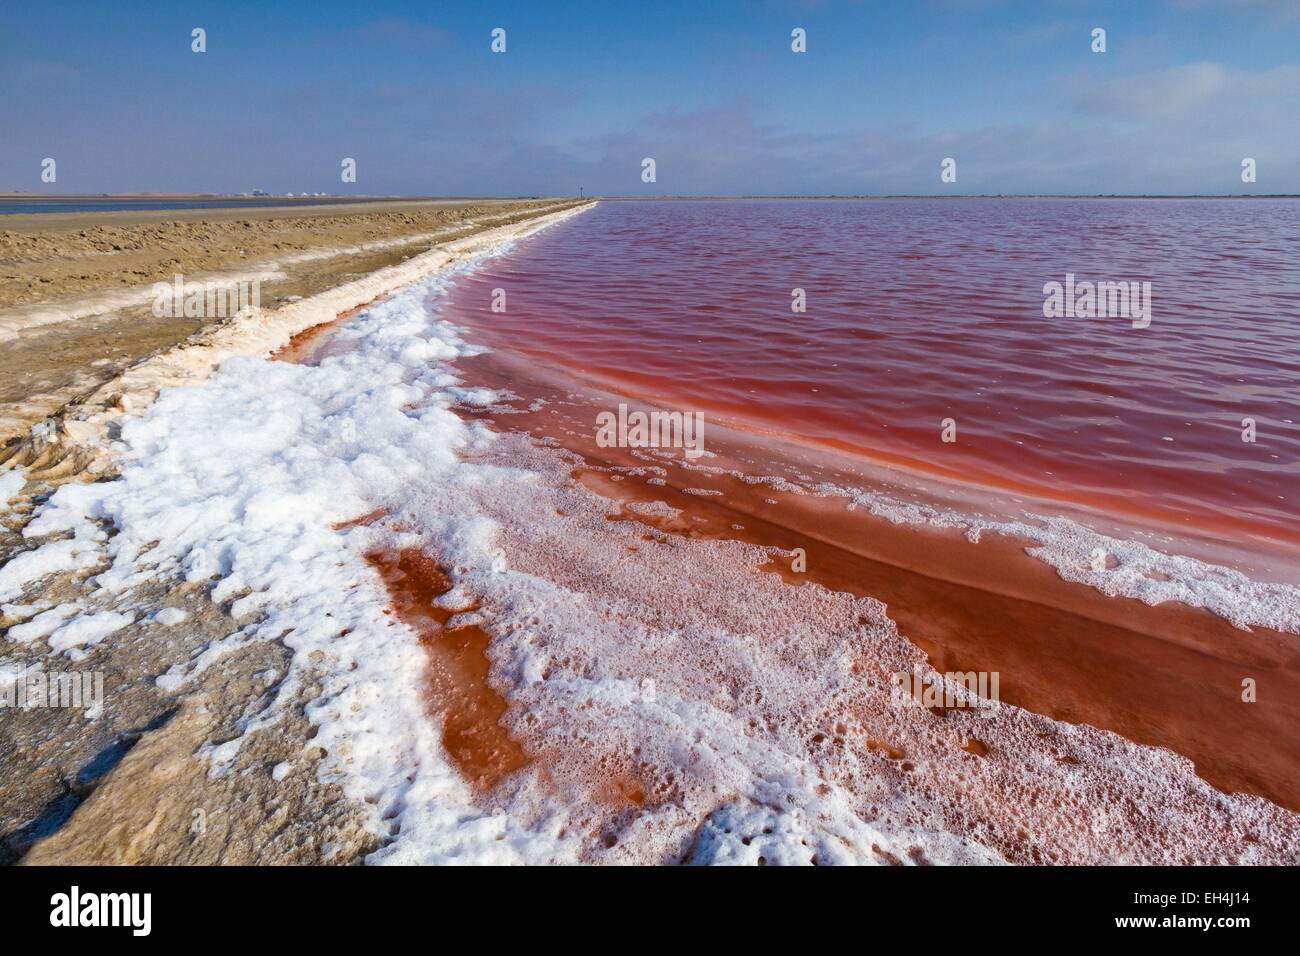 Namibia, Erongo region, Walvis bay, salt marshes Stock Photo